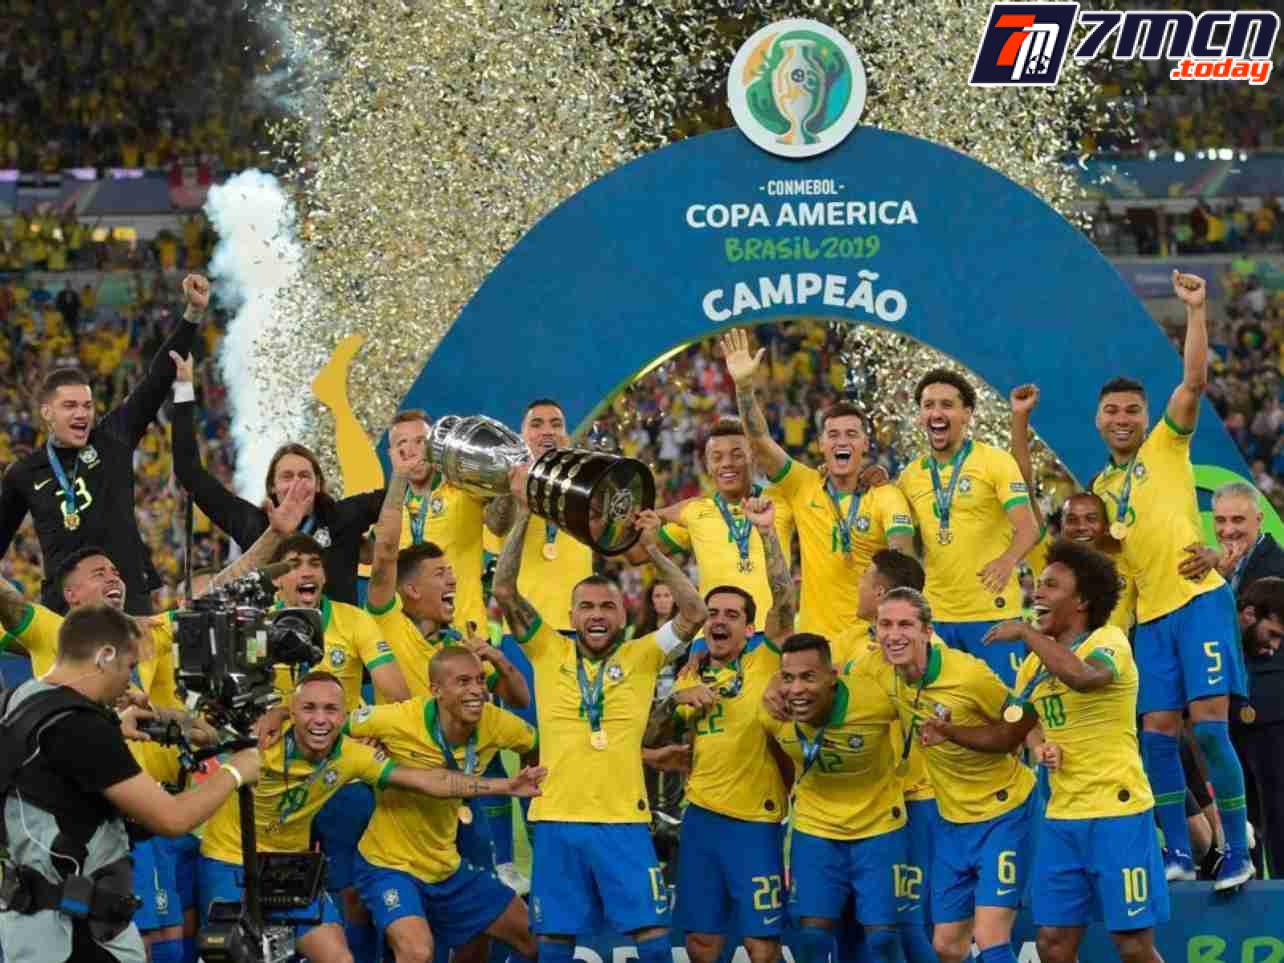 Lịch sử hình thành giải đấu Copa America